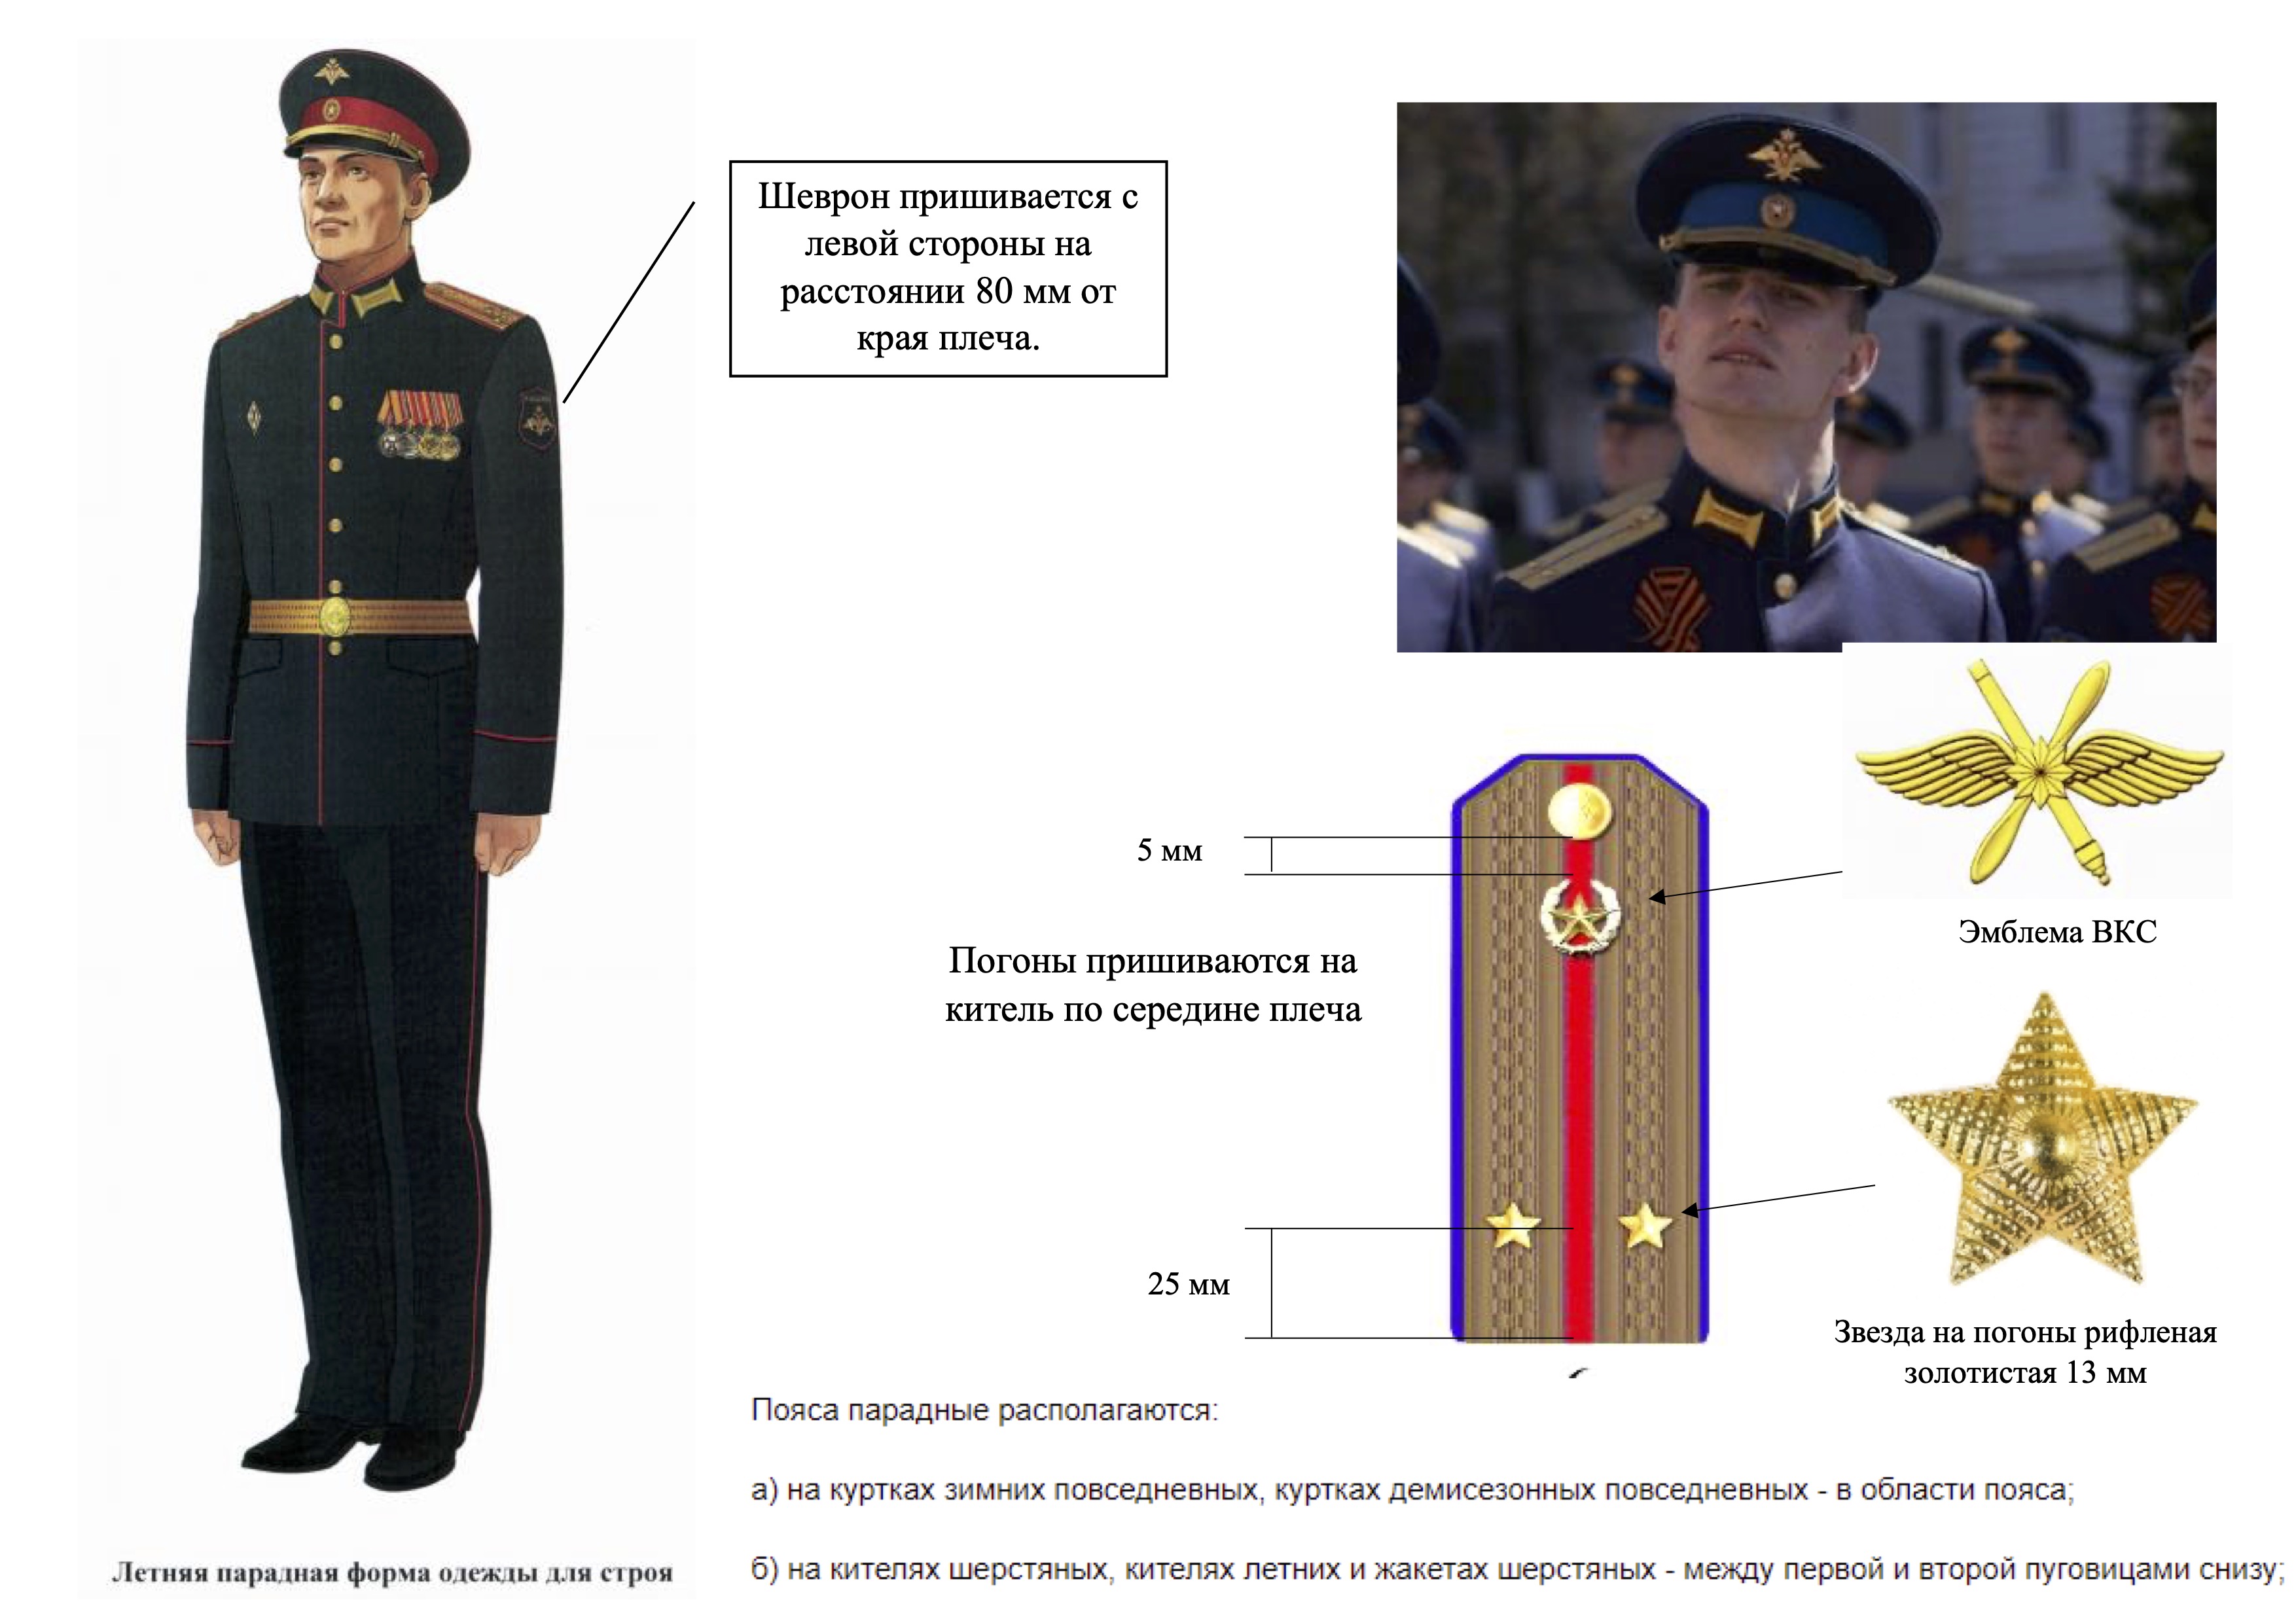 Парадная форма одежды Министерства обороны